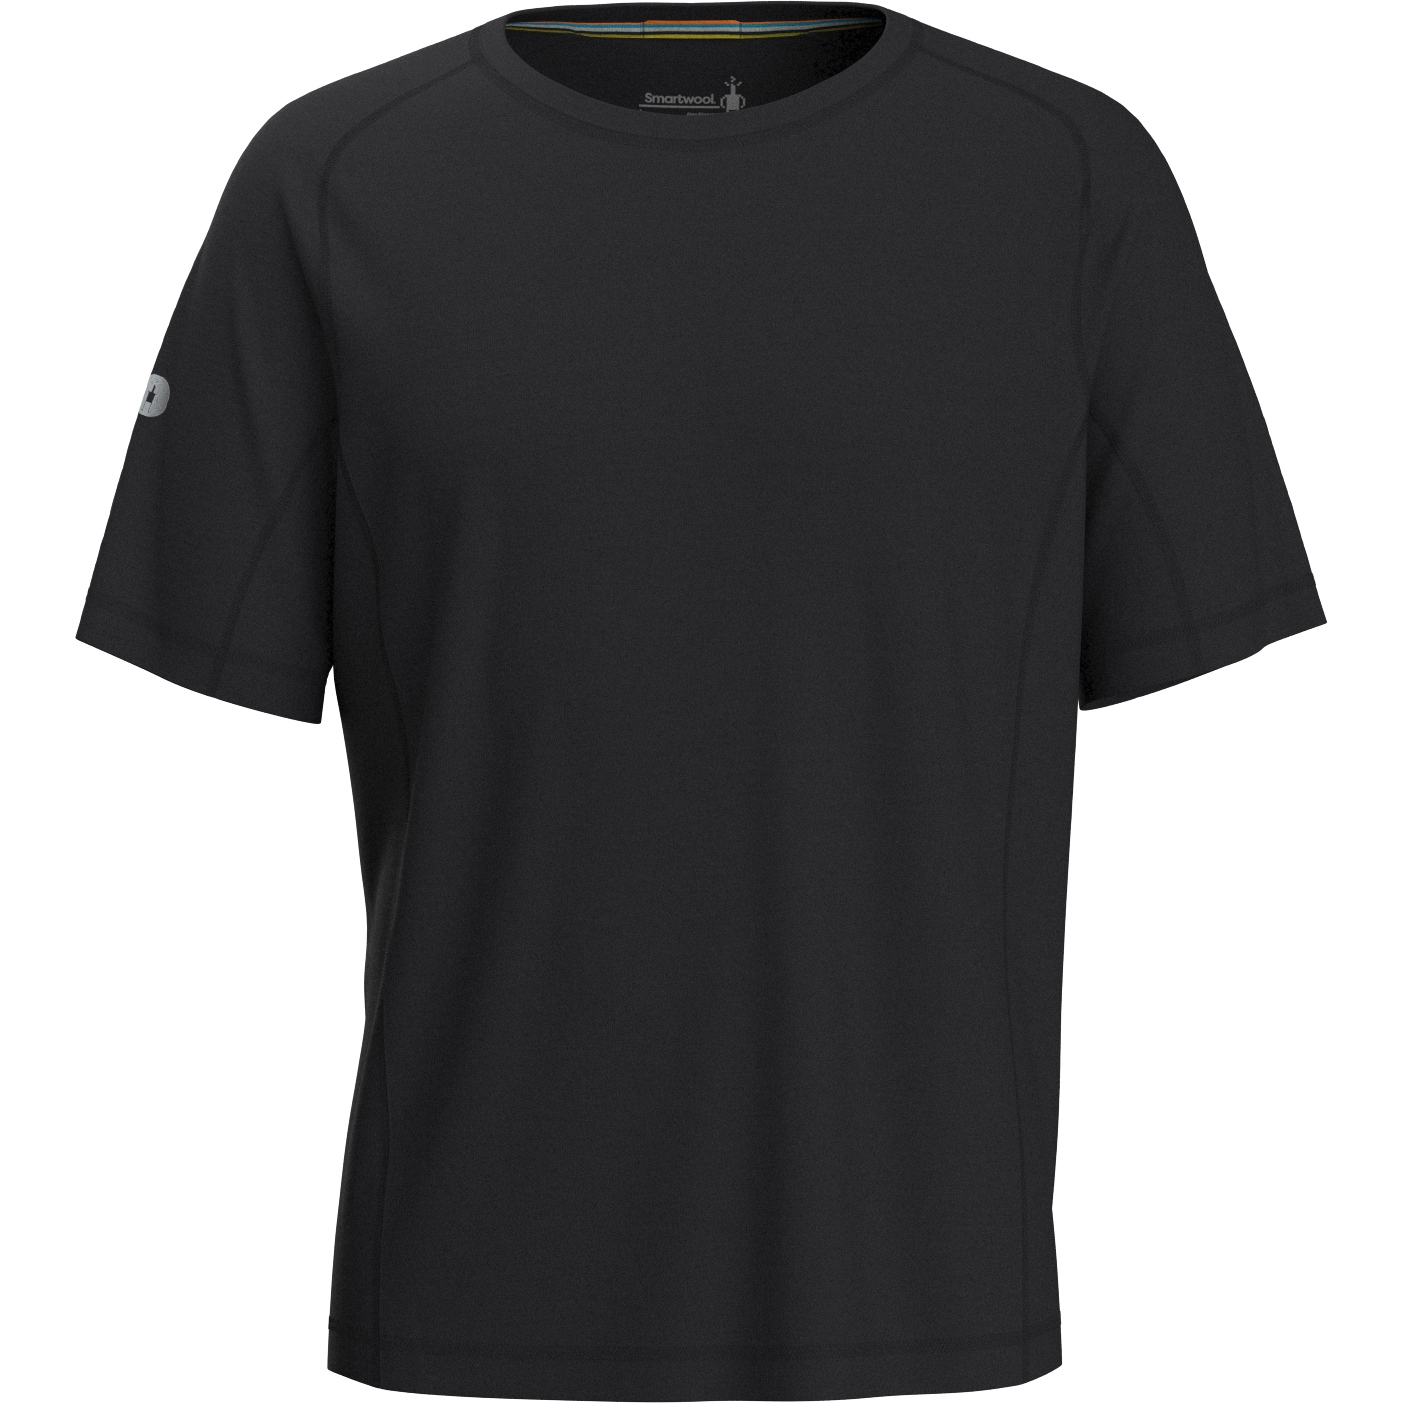 Productfoto van SmartWool Active Ultralite Shirt met Korte Mouwen Heren - 001 zwart